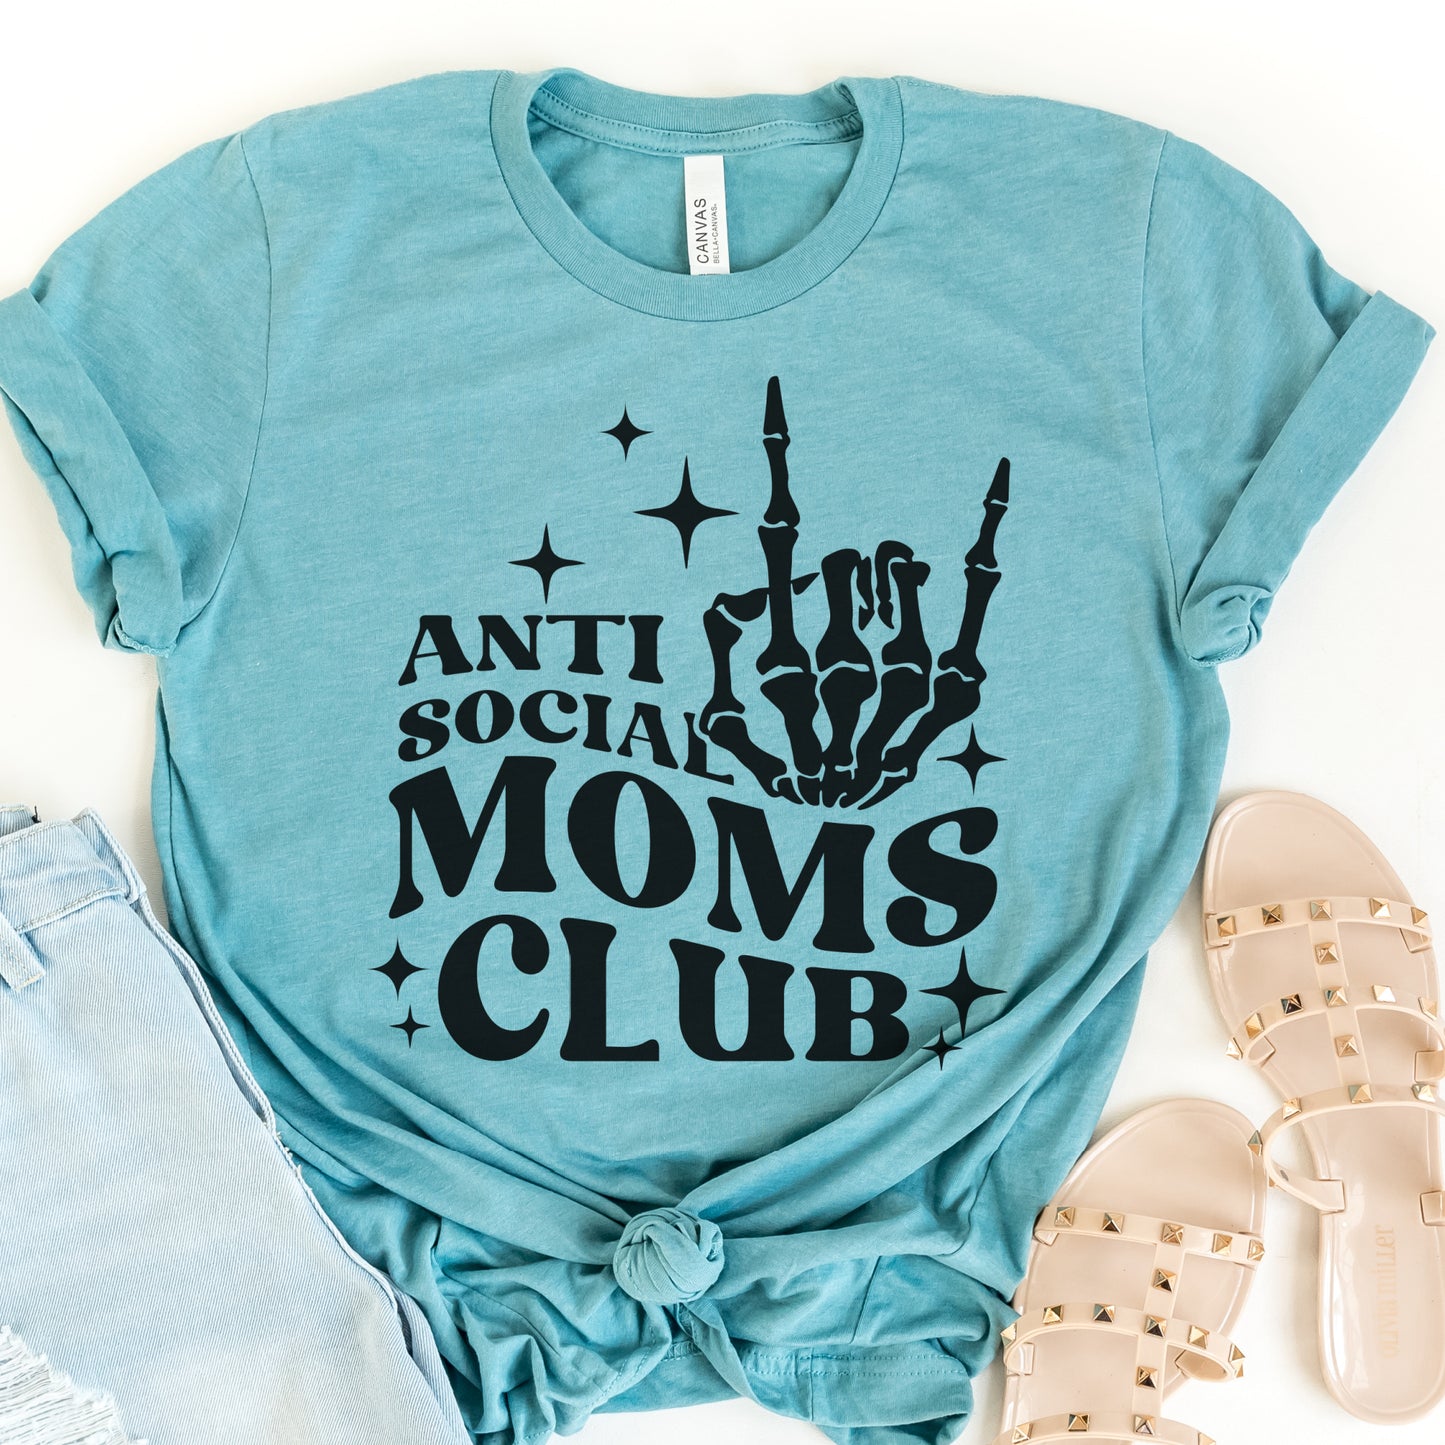 Copy of Sarcastic Tee Moms Club Tshirt Anti Social Moms Club T-Shirt Adult Small Thru XXL